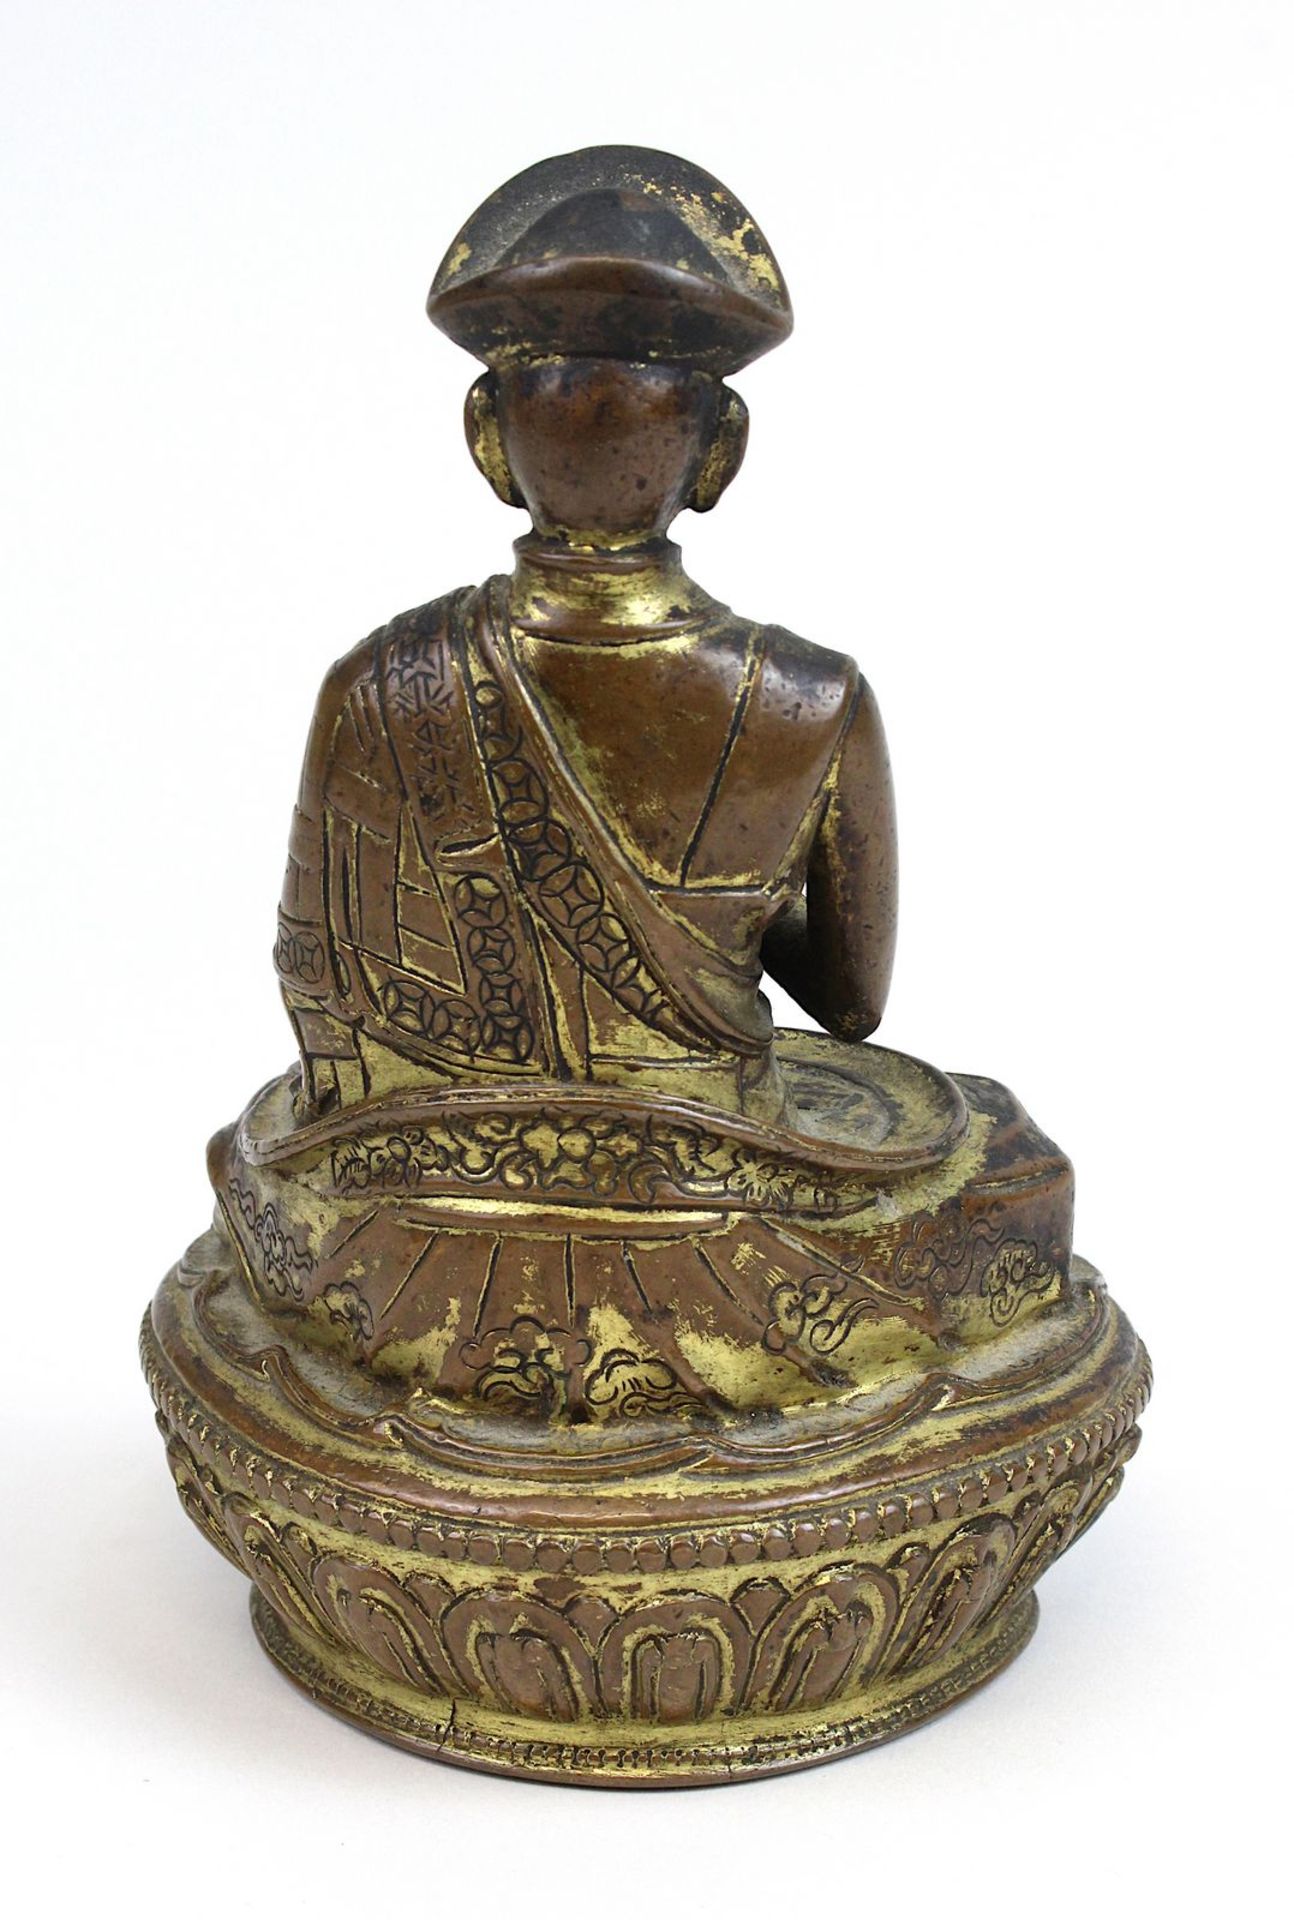 Lama aus Bronze, Himalaya 17 Jh., nach Vorbild eines Heiligen aus dem 11 Jh., Bronze mit Resten - Image 3 of 5